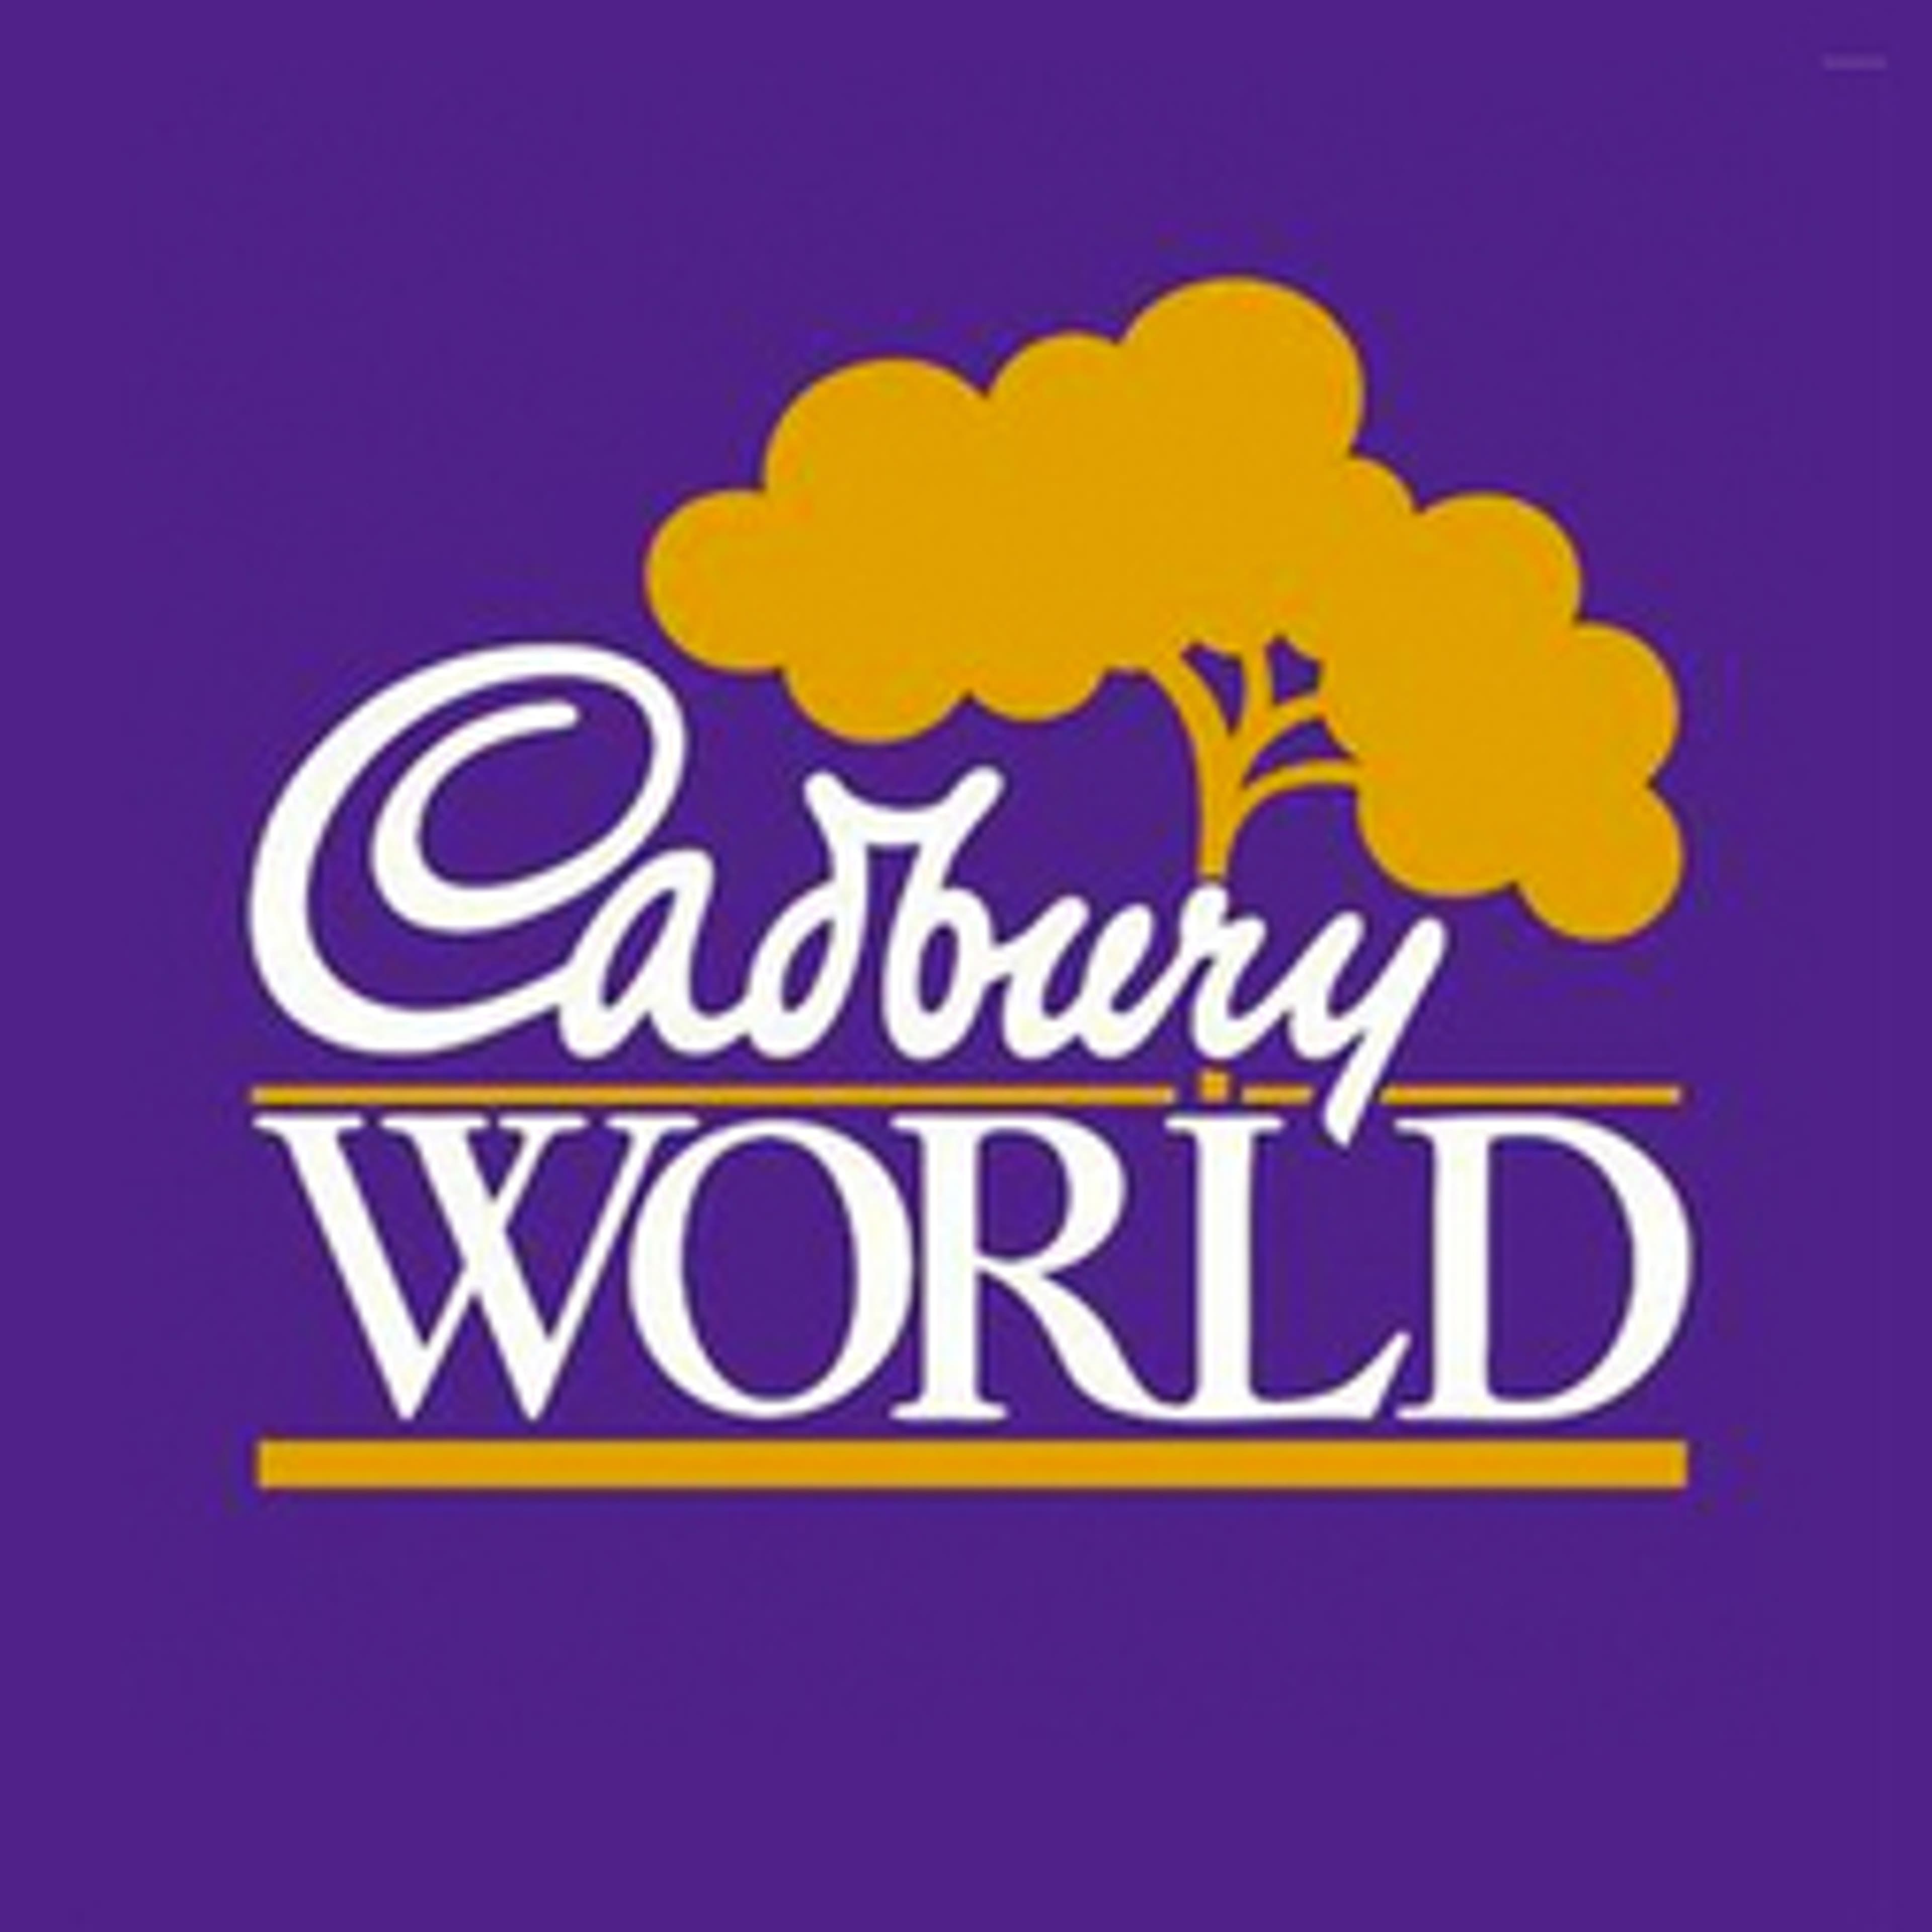  Cadbury World 